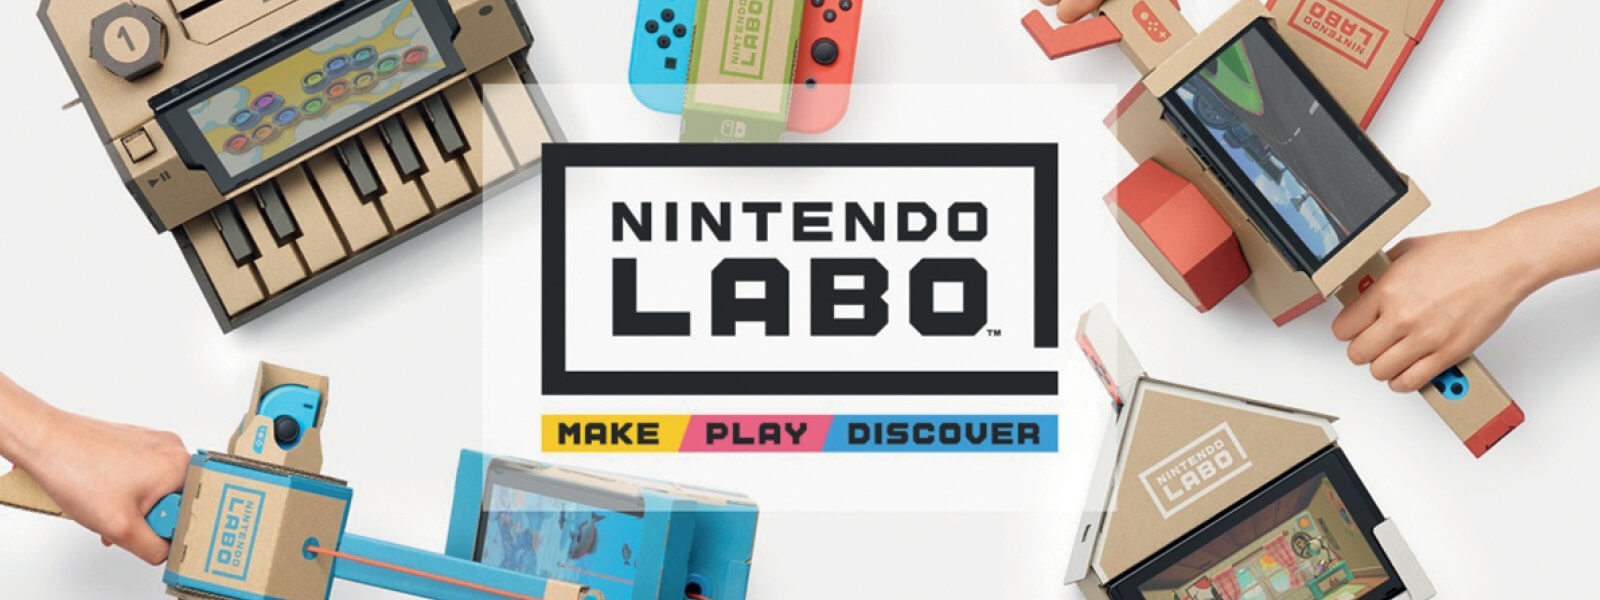 ที่มา : https://wccftech.com/pachter-nintendo-labo-2012/ Nintendo Labo เป็นการออกแบบกล่องบรรจุภัณฑ์หลังจากการทำหน้าห่อหุ้มสินค้าแล้ว ให้สามารถกลายเป็นอุปกรณ์ประกอบการเล่นเกมส์ต่อได้อีก